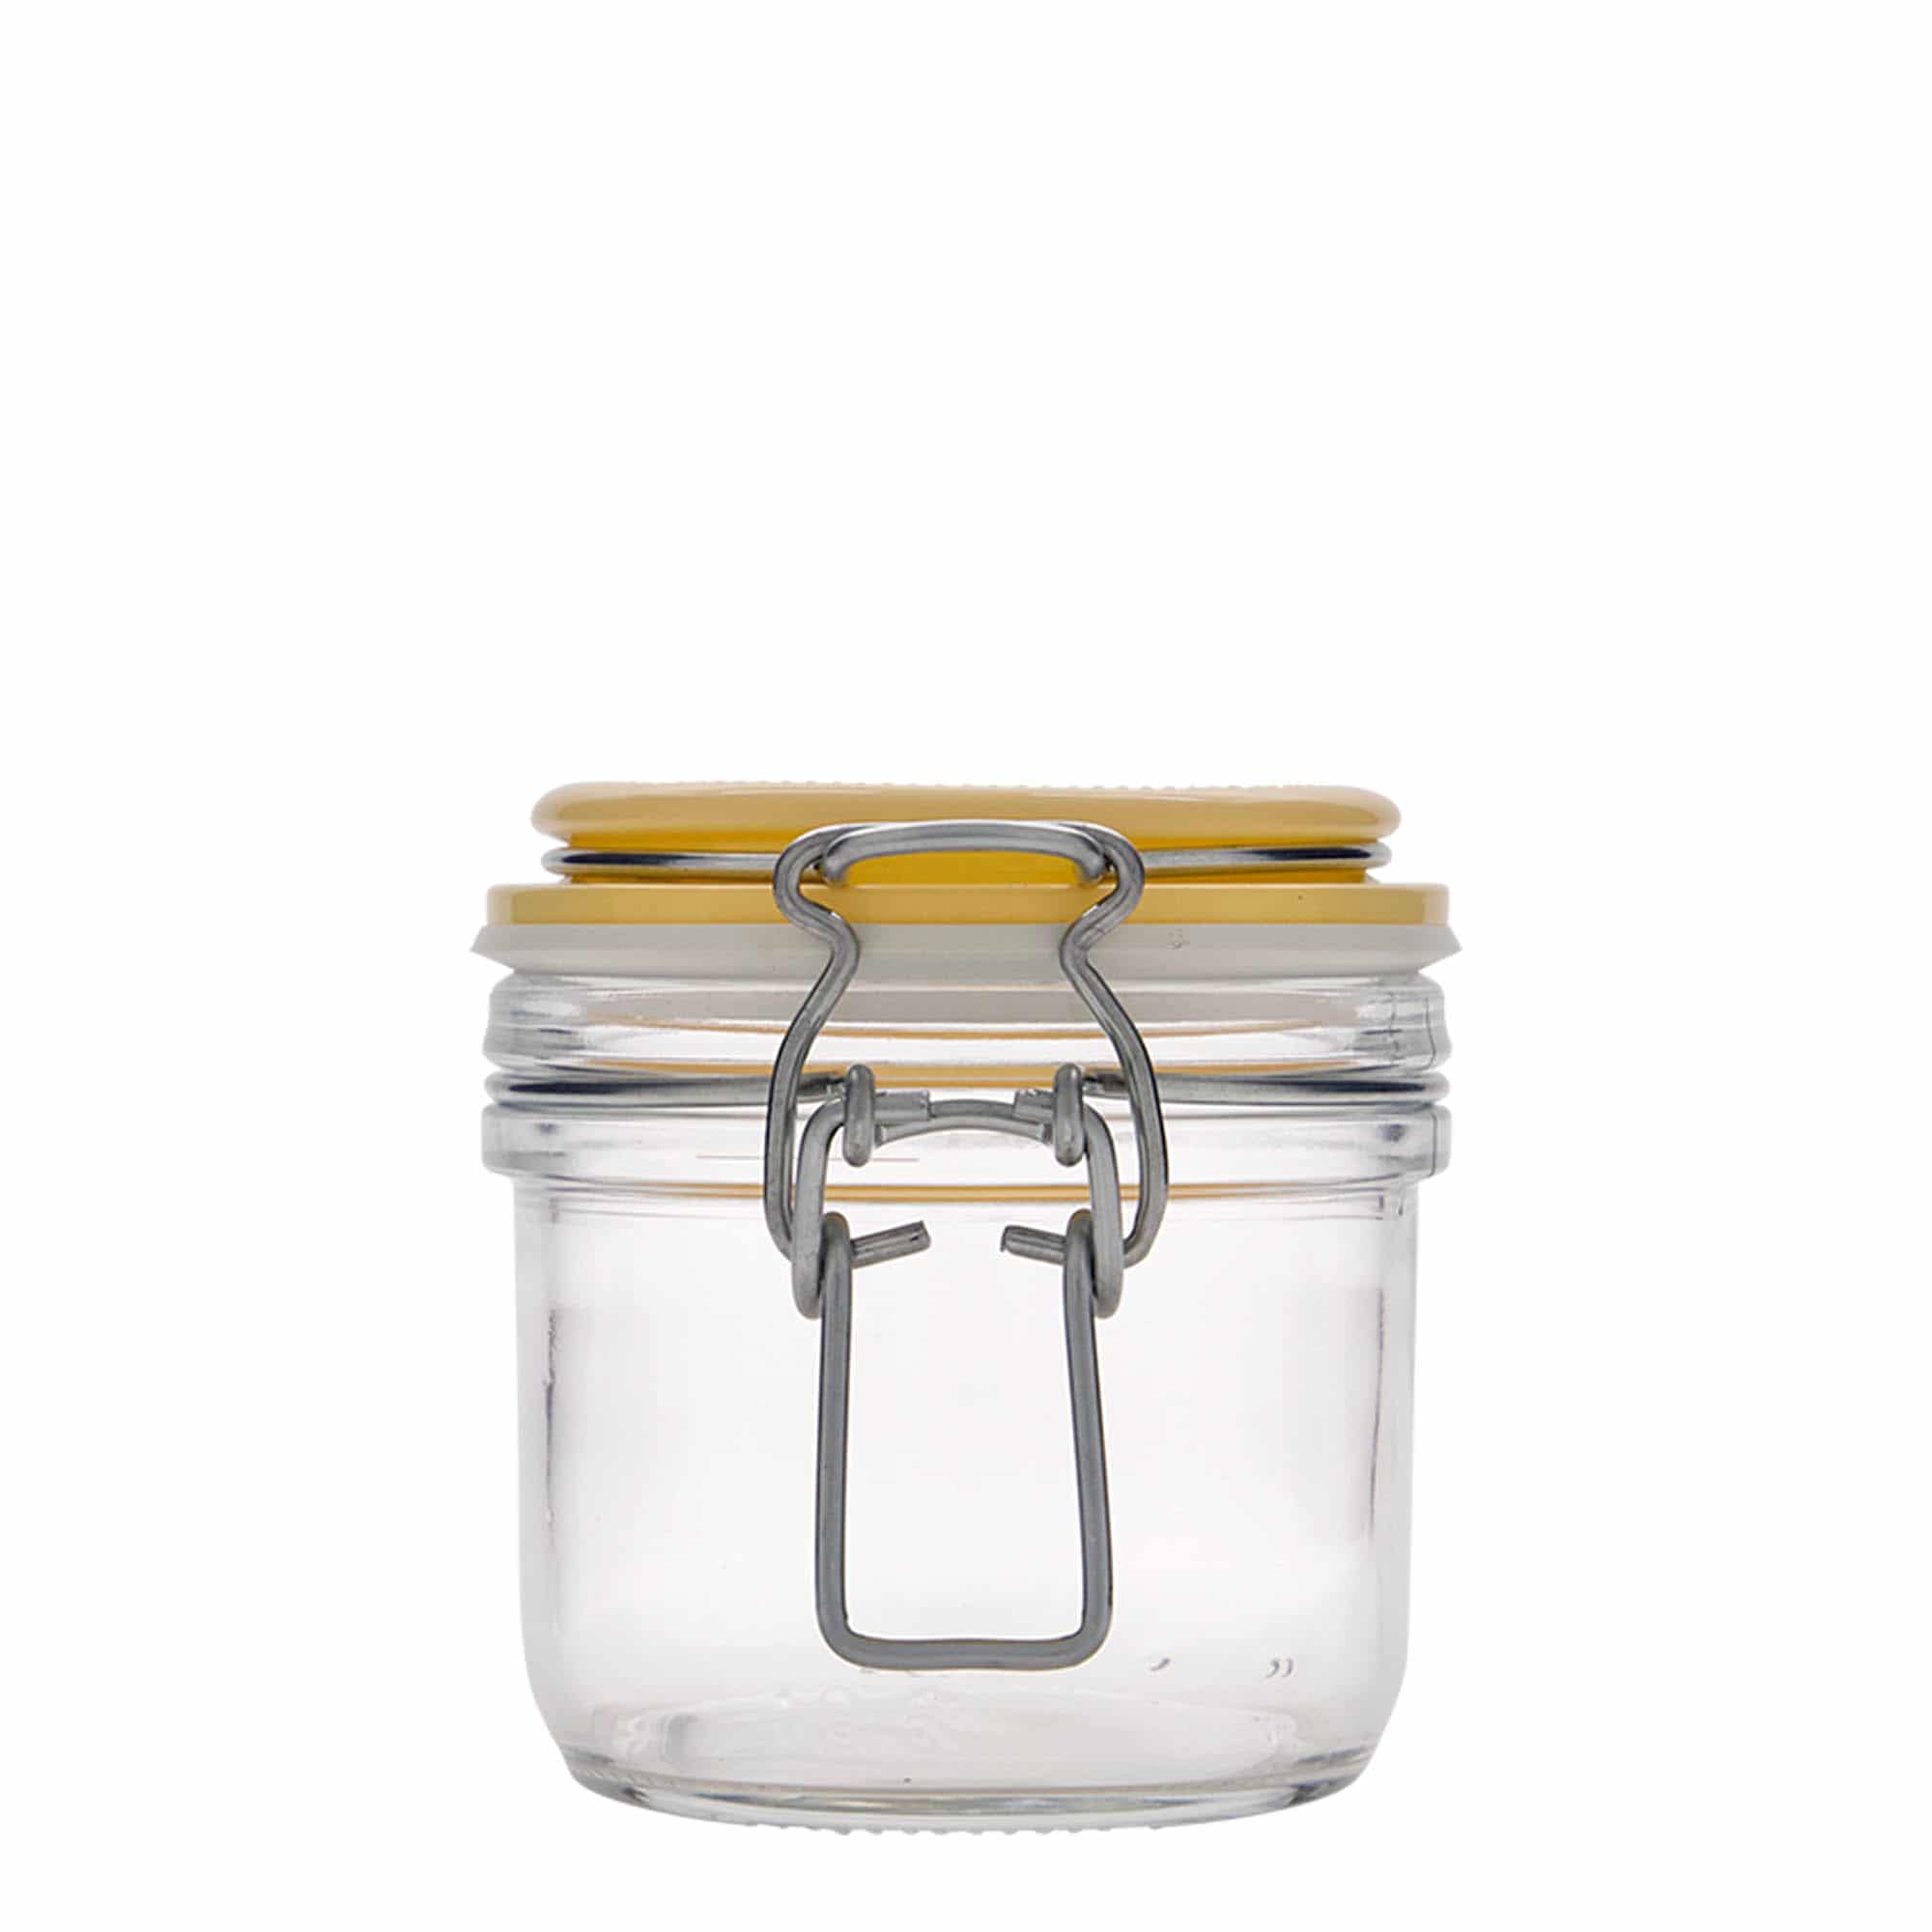 200 ml clip top jar 'Fido', yellow, closure: clip top